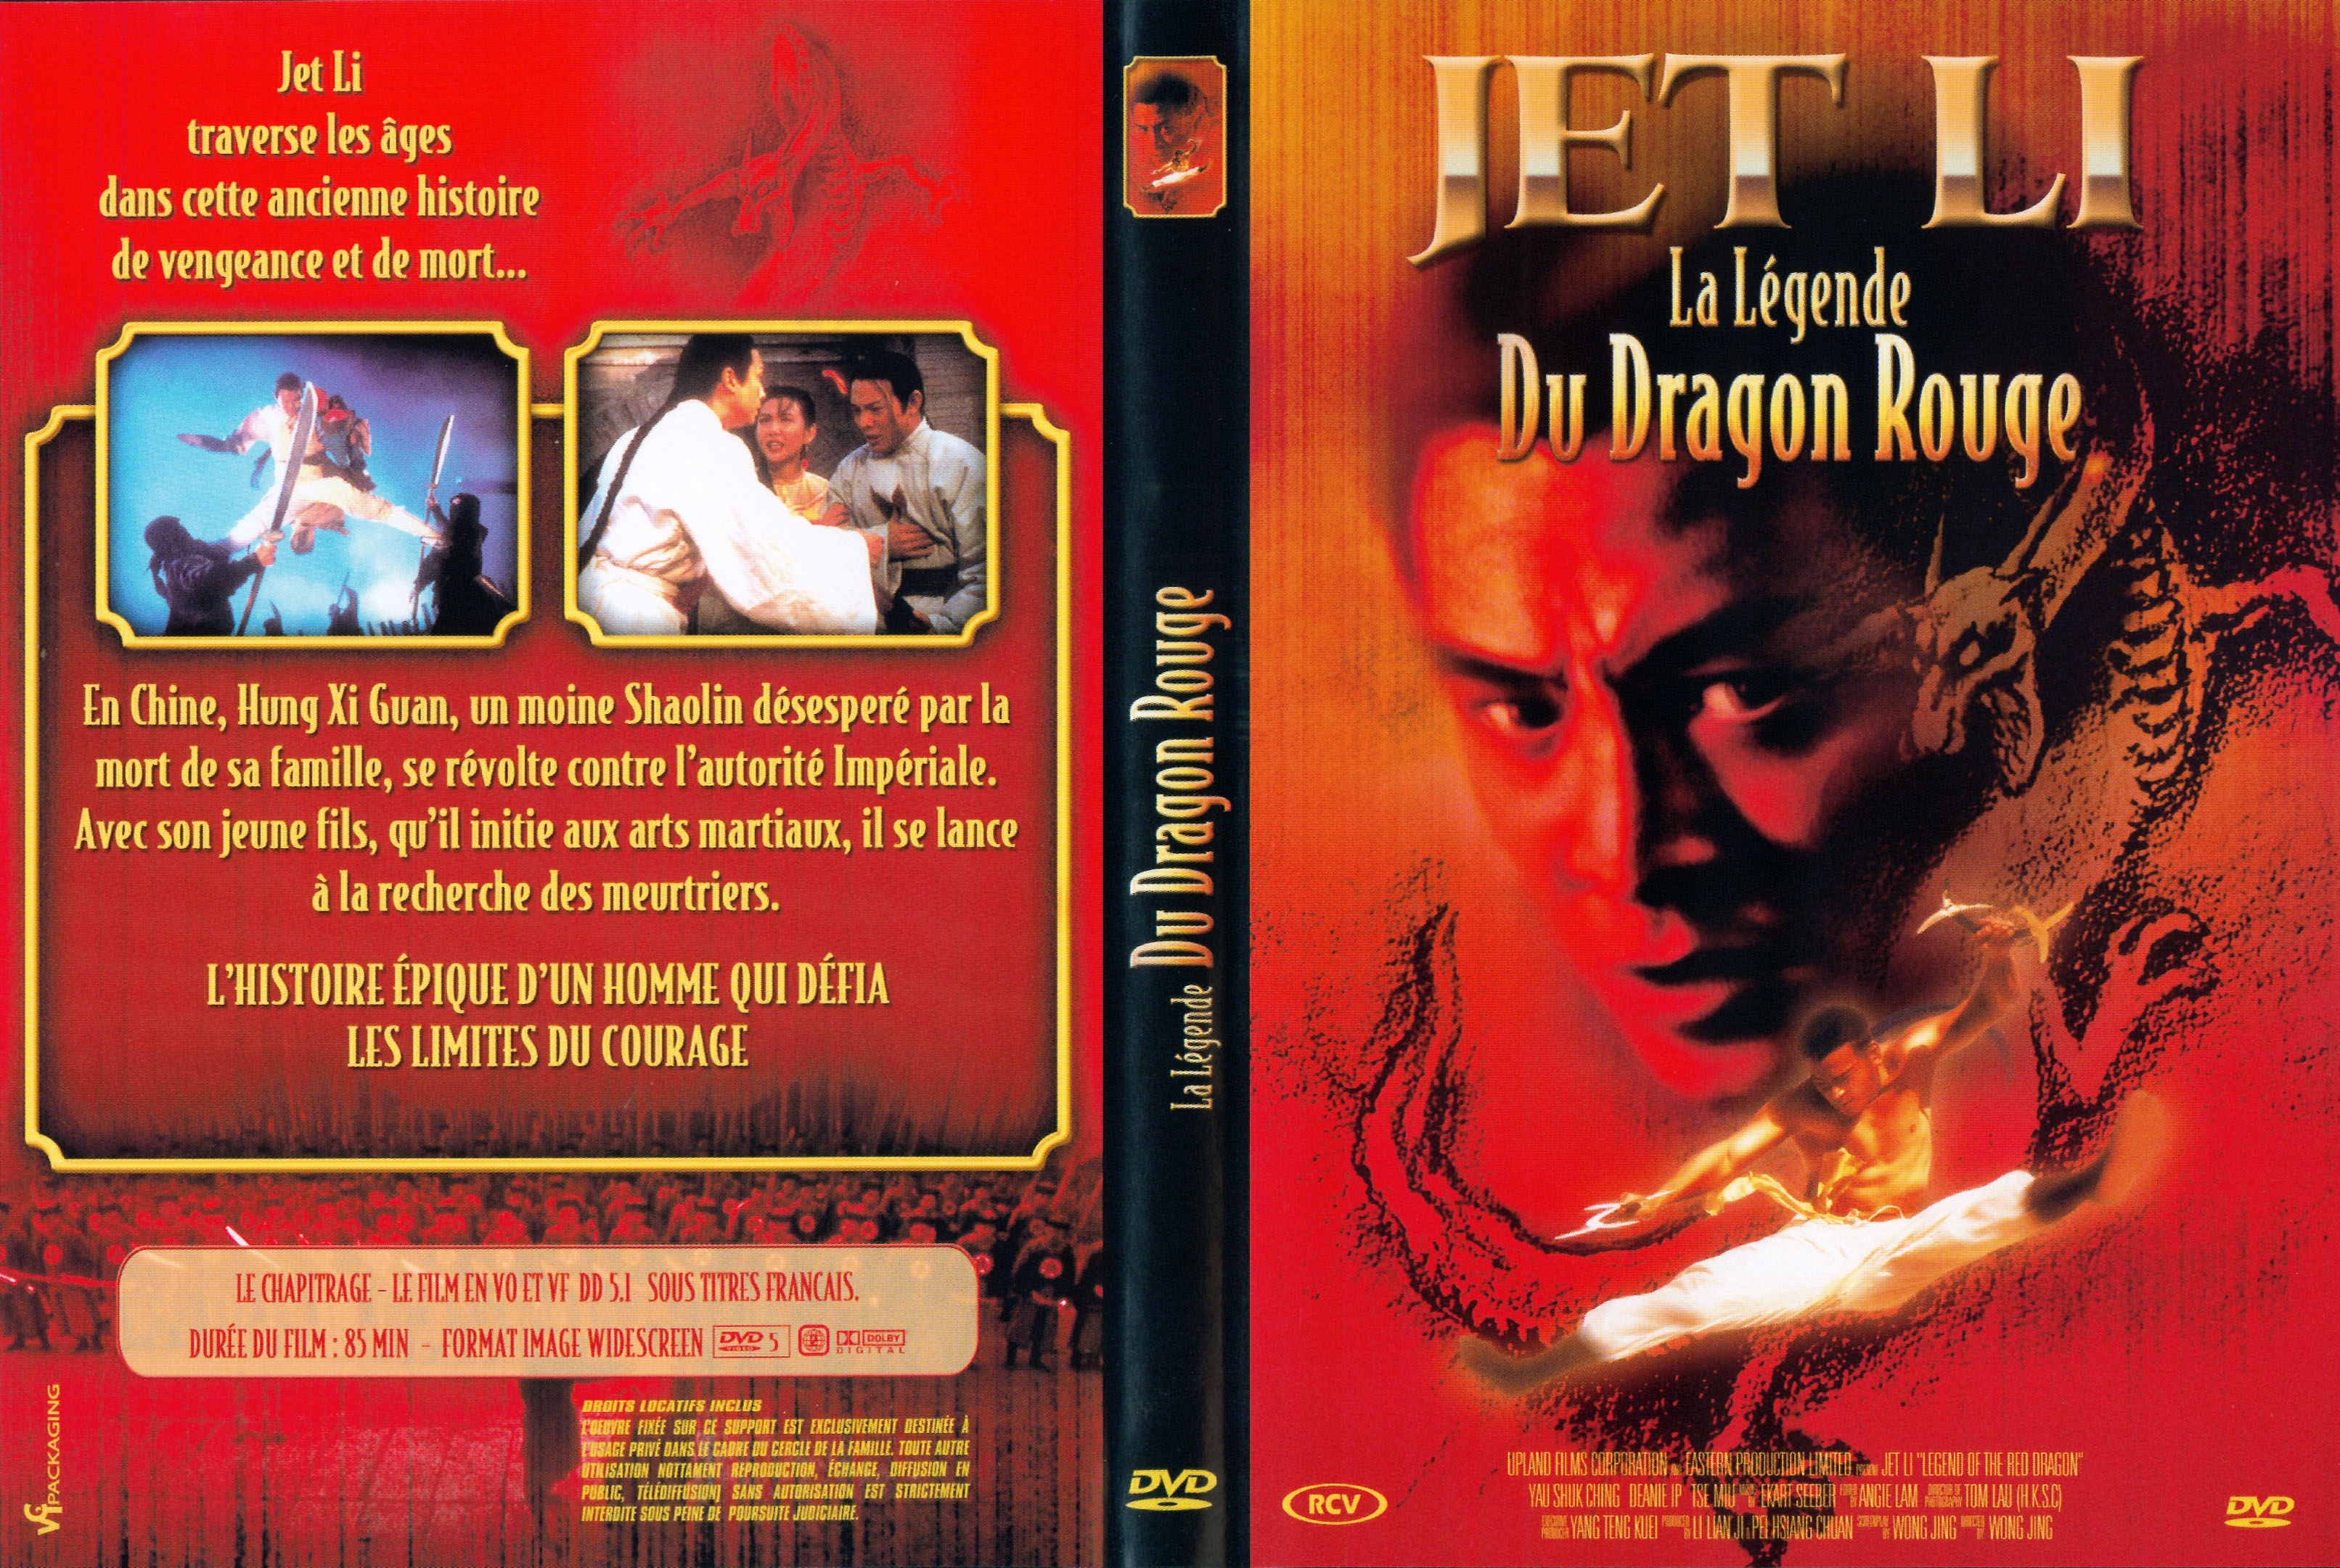 Jaquette DVD La legende du dragon rouge v2